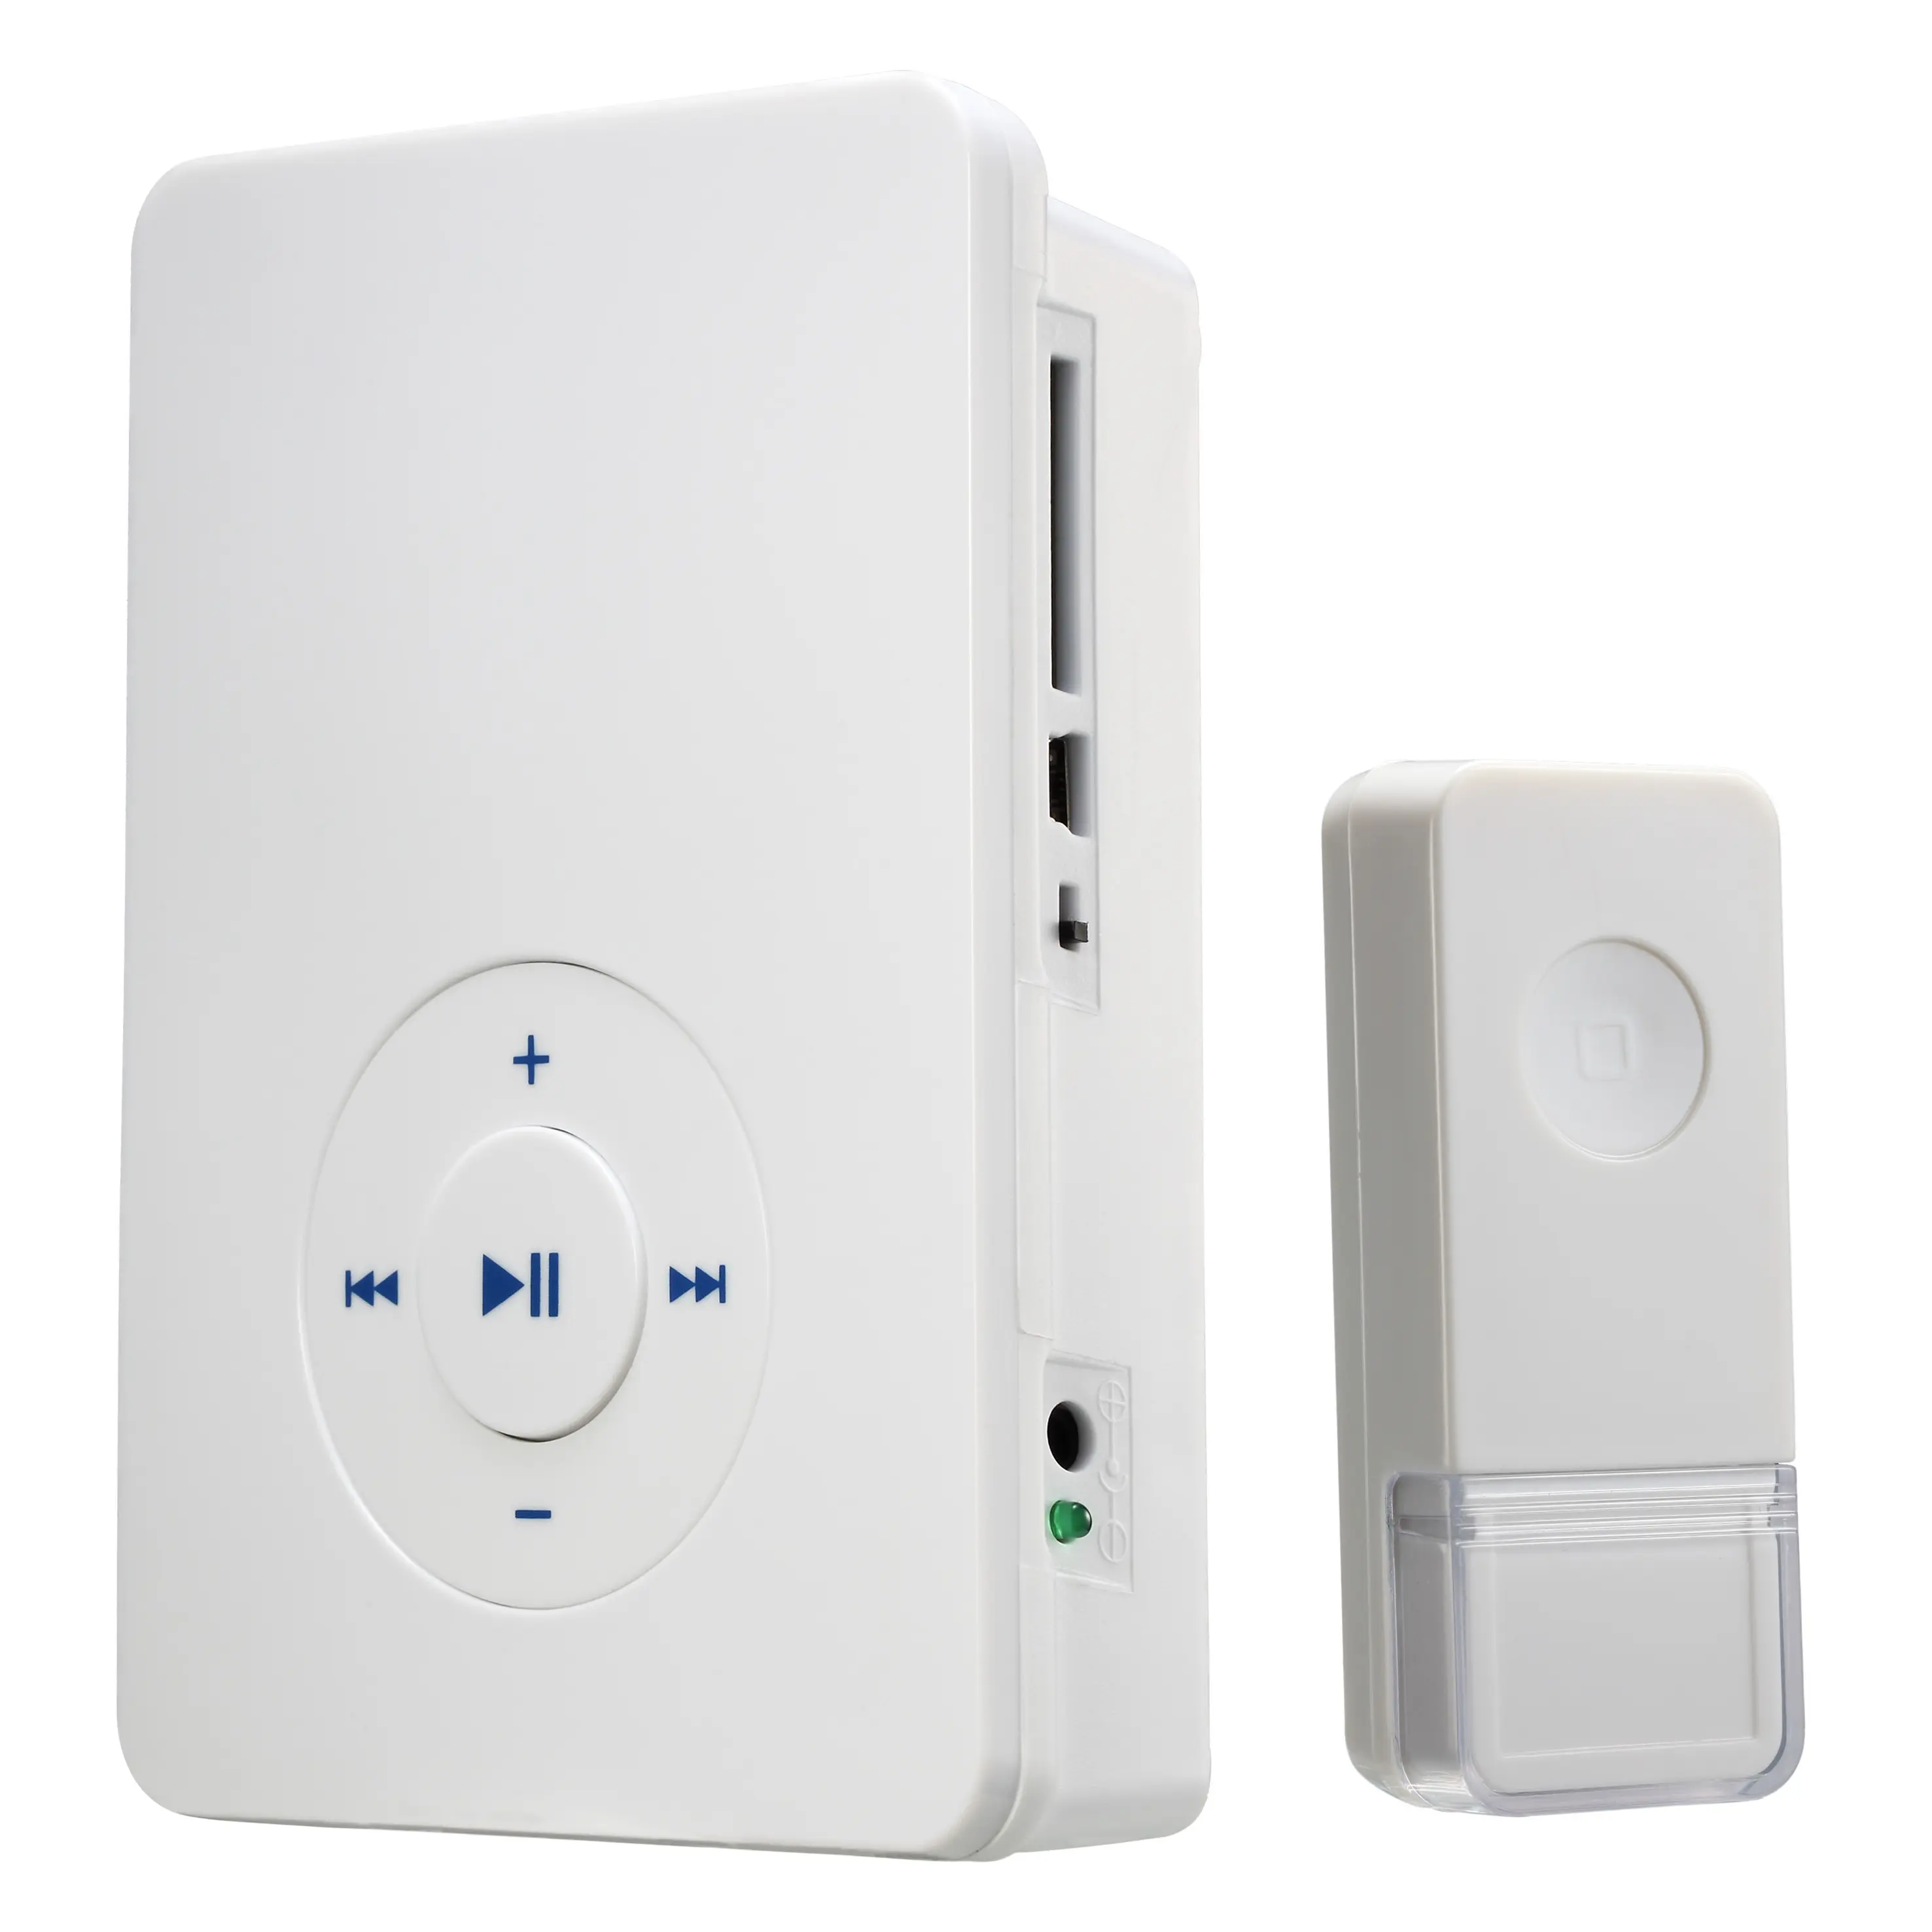 MP3 sonnette sans fil QH-838A